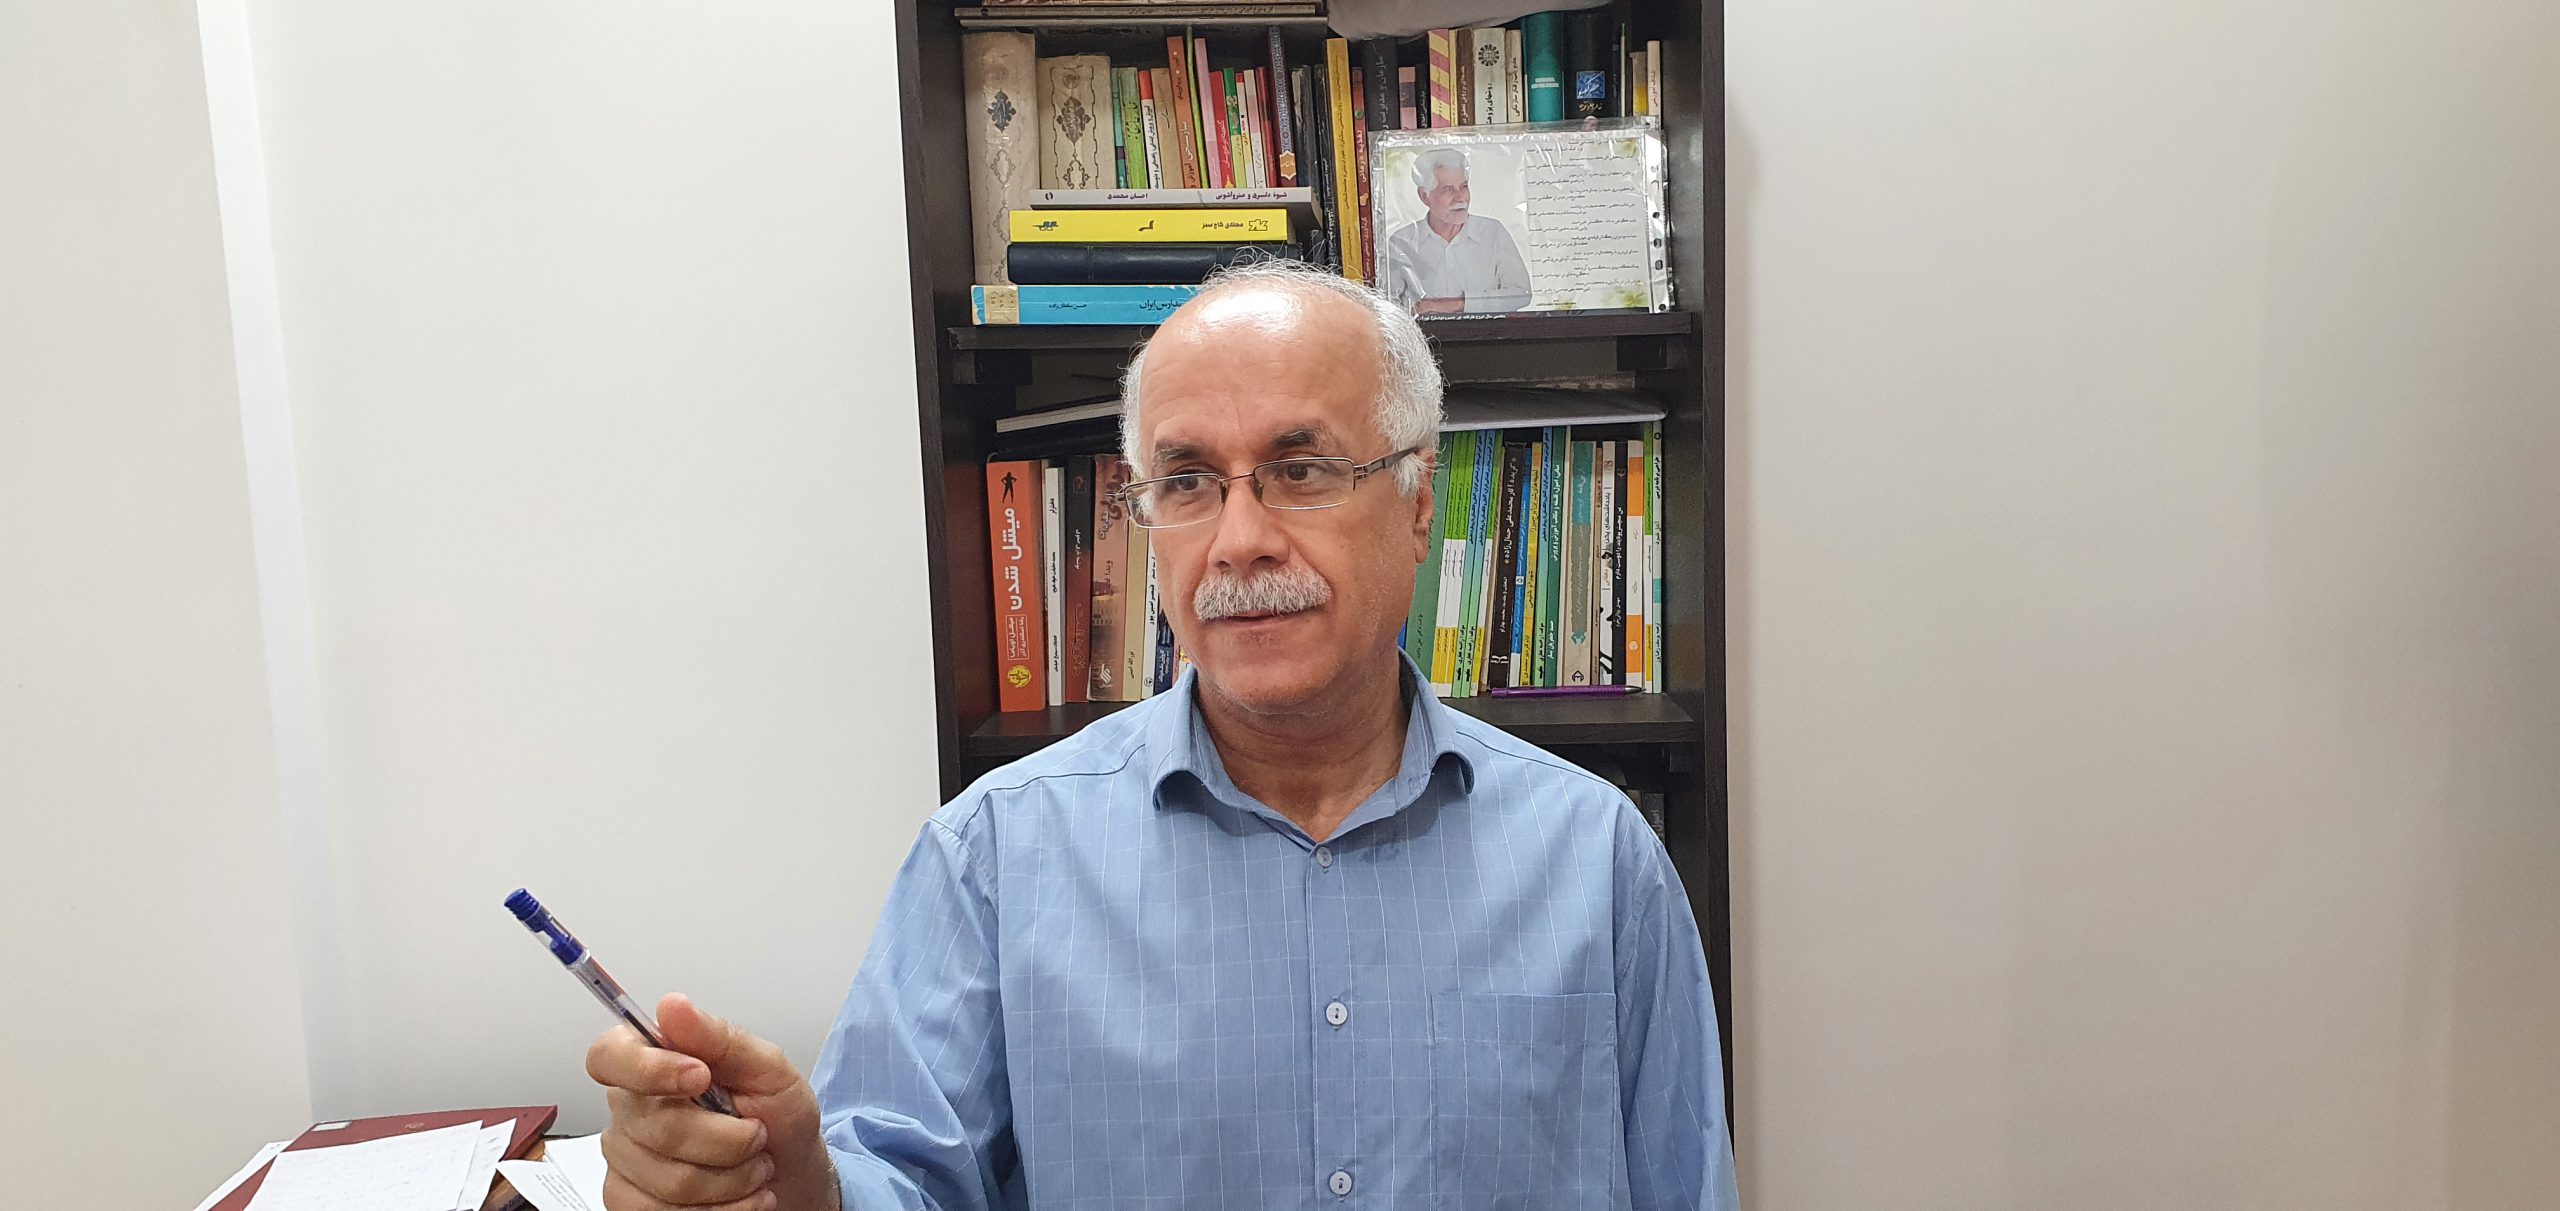 دکتر محمد امینی نشریه آرمان کاشان در گفتگو با نشریه مردم کویر گفت